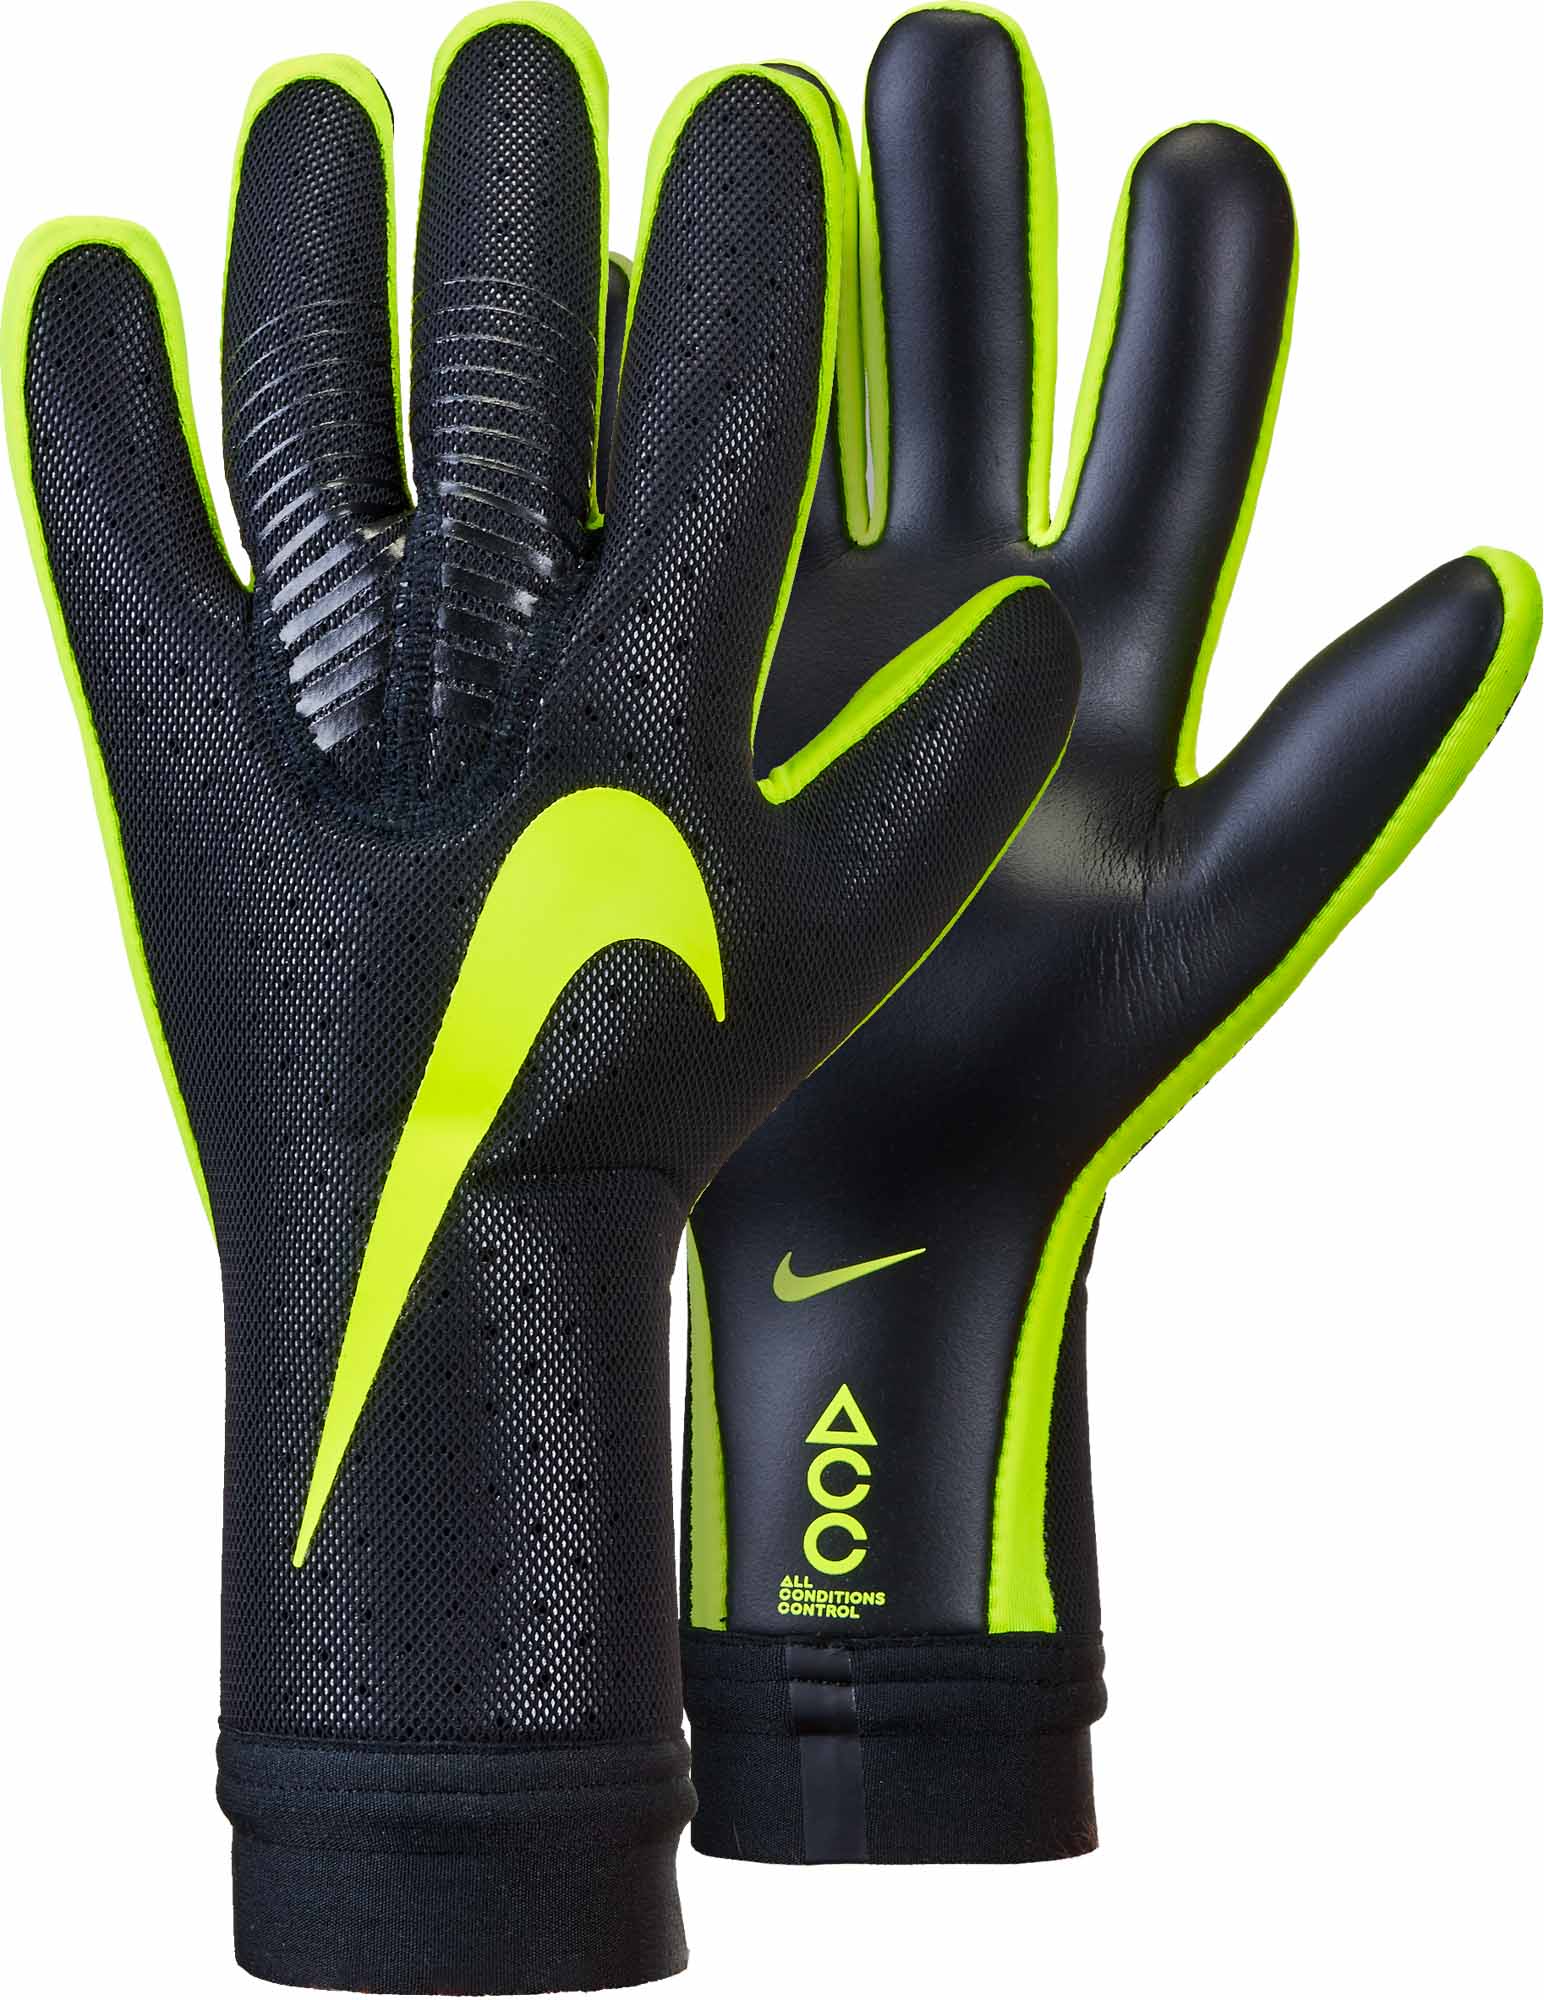 Gs0356 010 Nike Vapor Touch Gk Gloves 01 